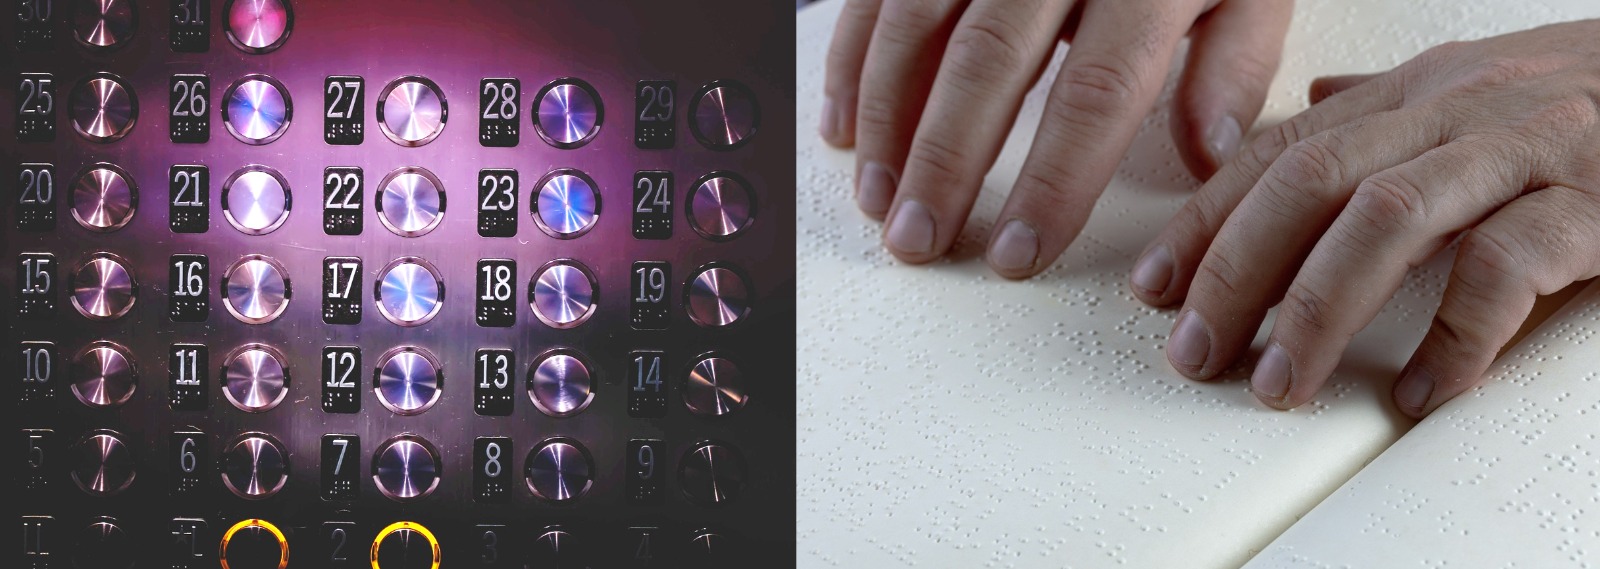 Composición de dos imágenes, a la izquierda los botones de un ascensor con los números en Braille hasta el 31 y a la derecha unas manos leyendo un libro en Braille.